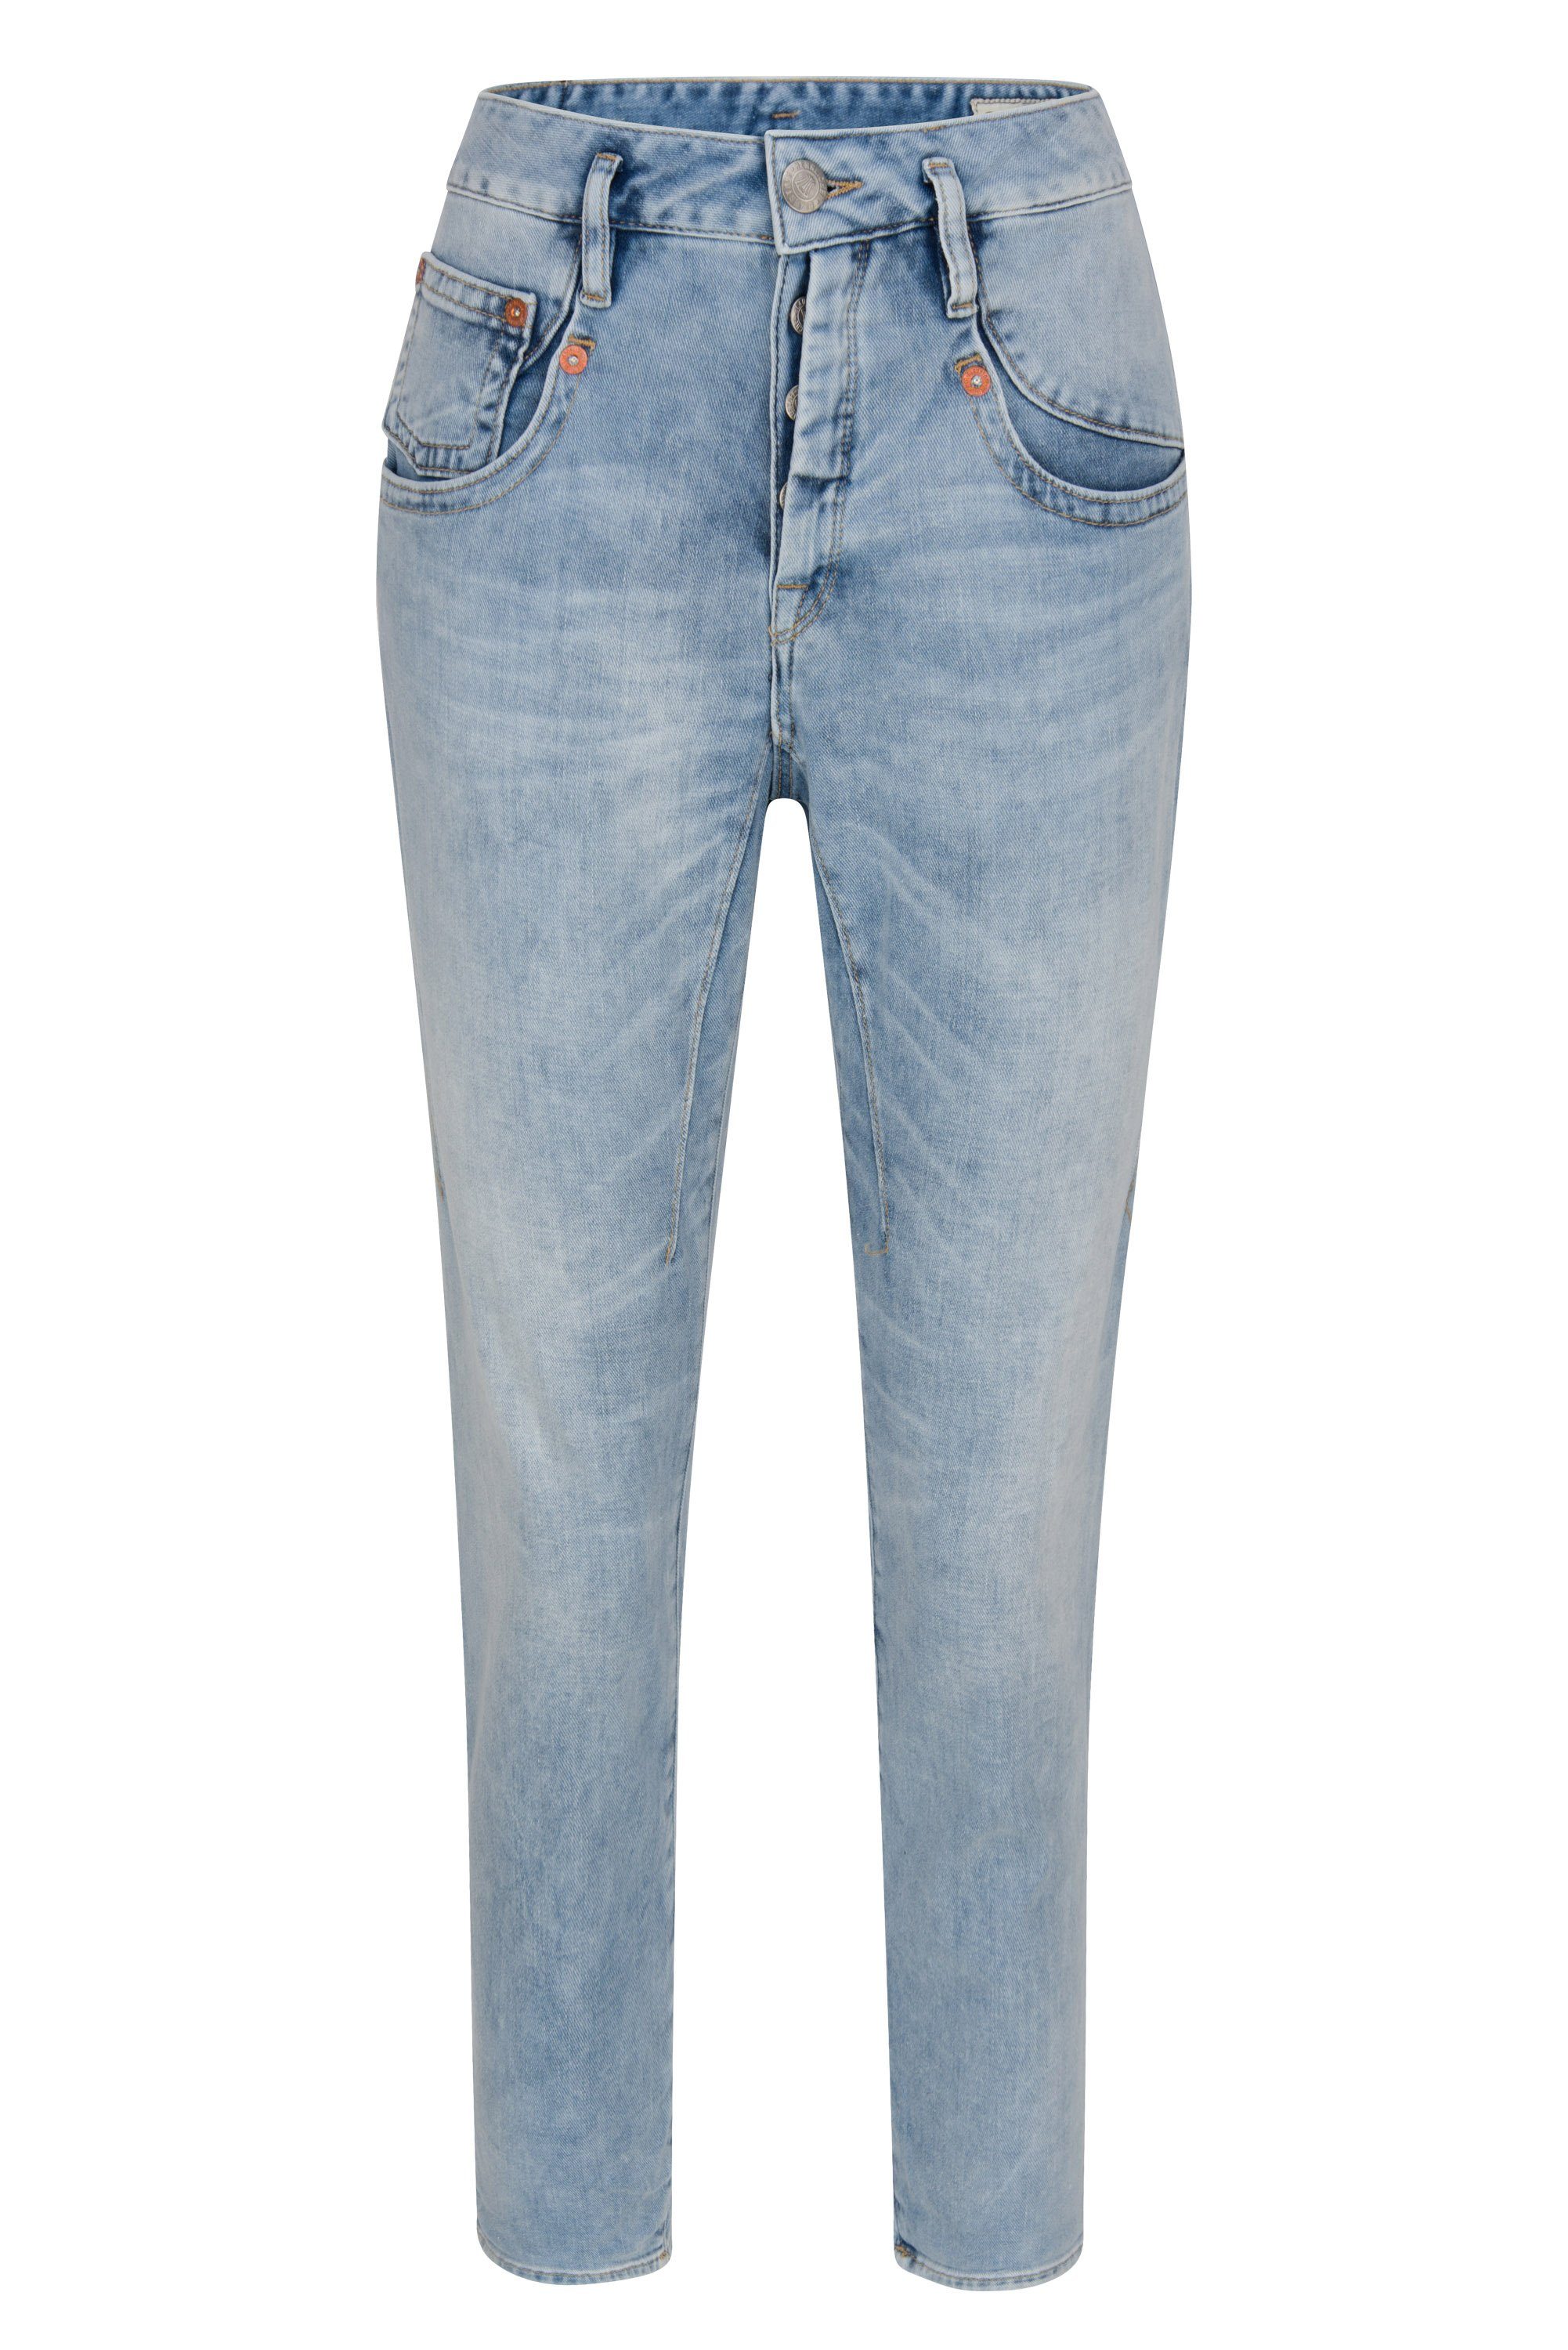 Herrlicher Stretch-Jeans HERRLICHER SHYRA Cropped Cashmere Touch Denim lucid 5318-D9020-006